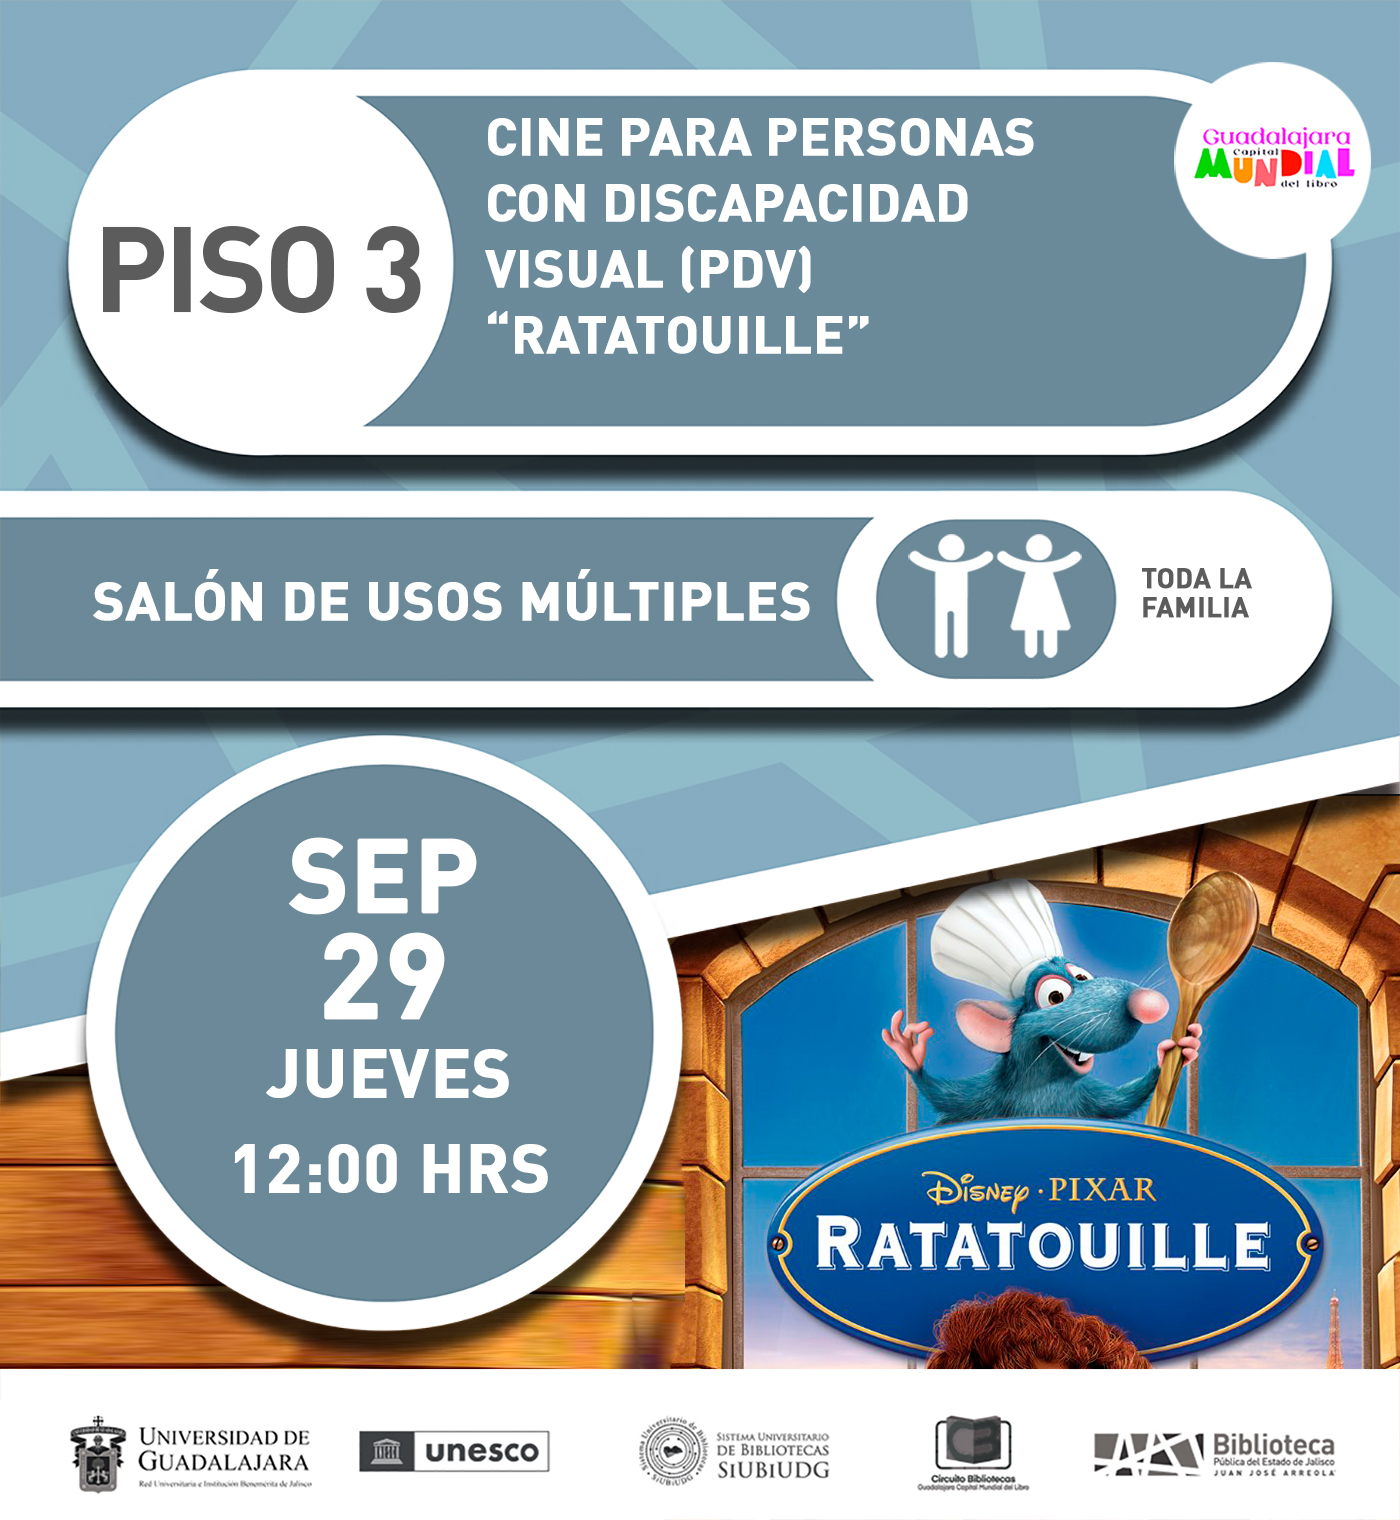 En la imagen se encuentra la portada de la película de Disney Pixar Ratatouille. En el texto de la imagen dice: cine para personas con discapacidad visual (PDV) con la proyección de "Ratatouille". Salón de usos múltiples del piso 3, para toda la familia. Jueves 29 de septiembre de 2022 a las 12 horas.